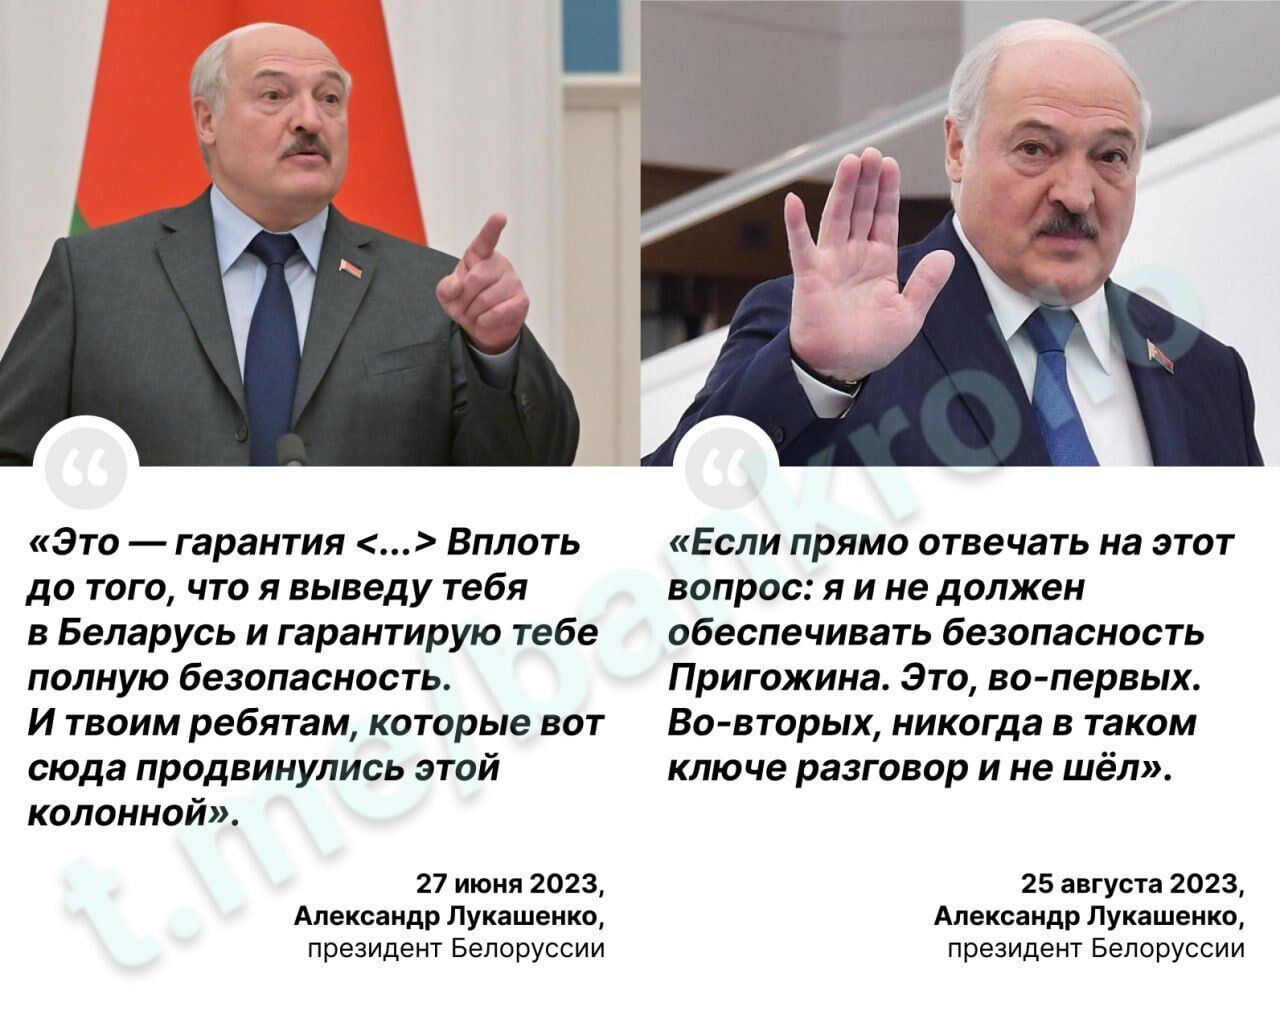 "Никогда такого разговора не было": Лукашенко вдруг "забыл", что давал Пригожину гарантии безопасности. Видео